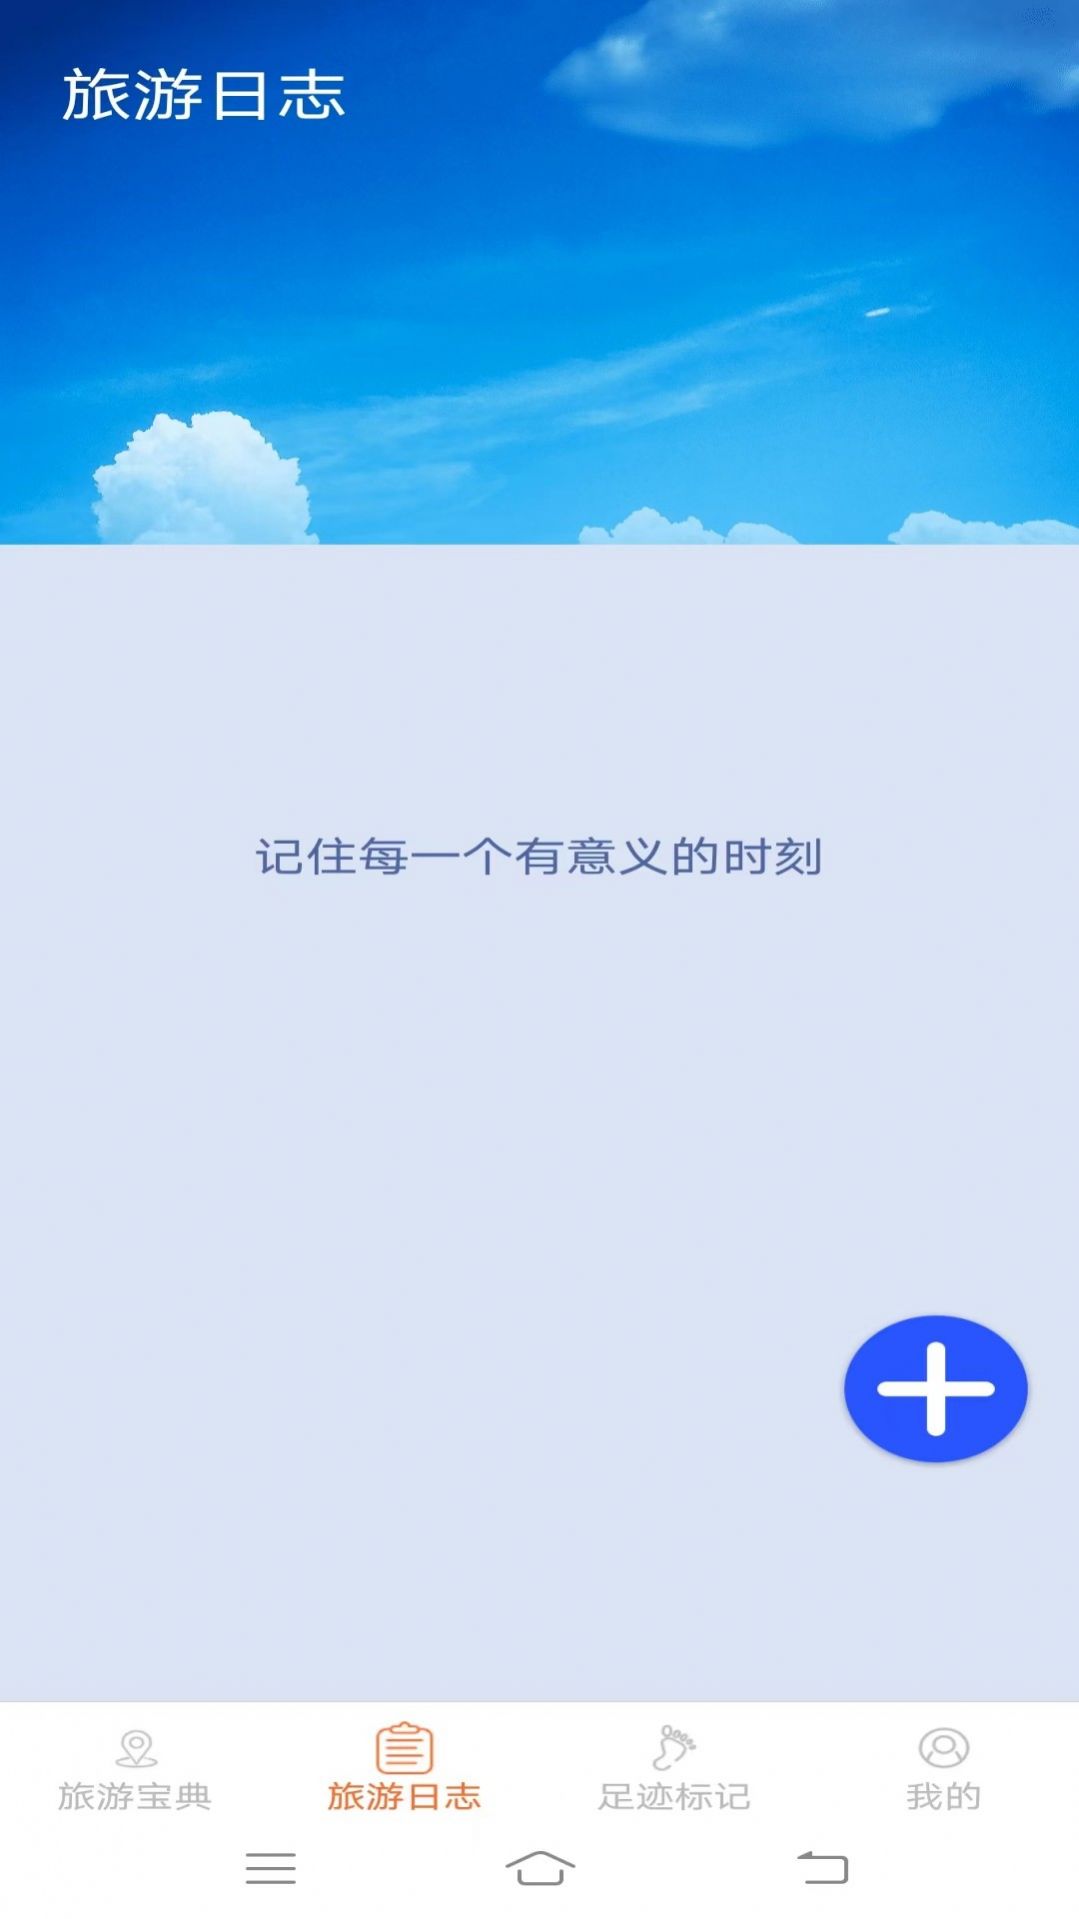 天天爱旅游app安卓版官方下载图片3